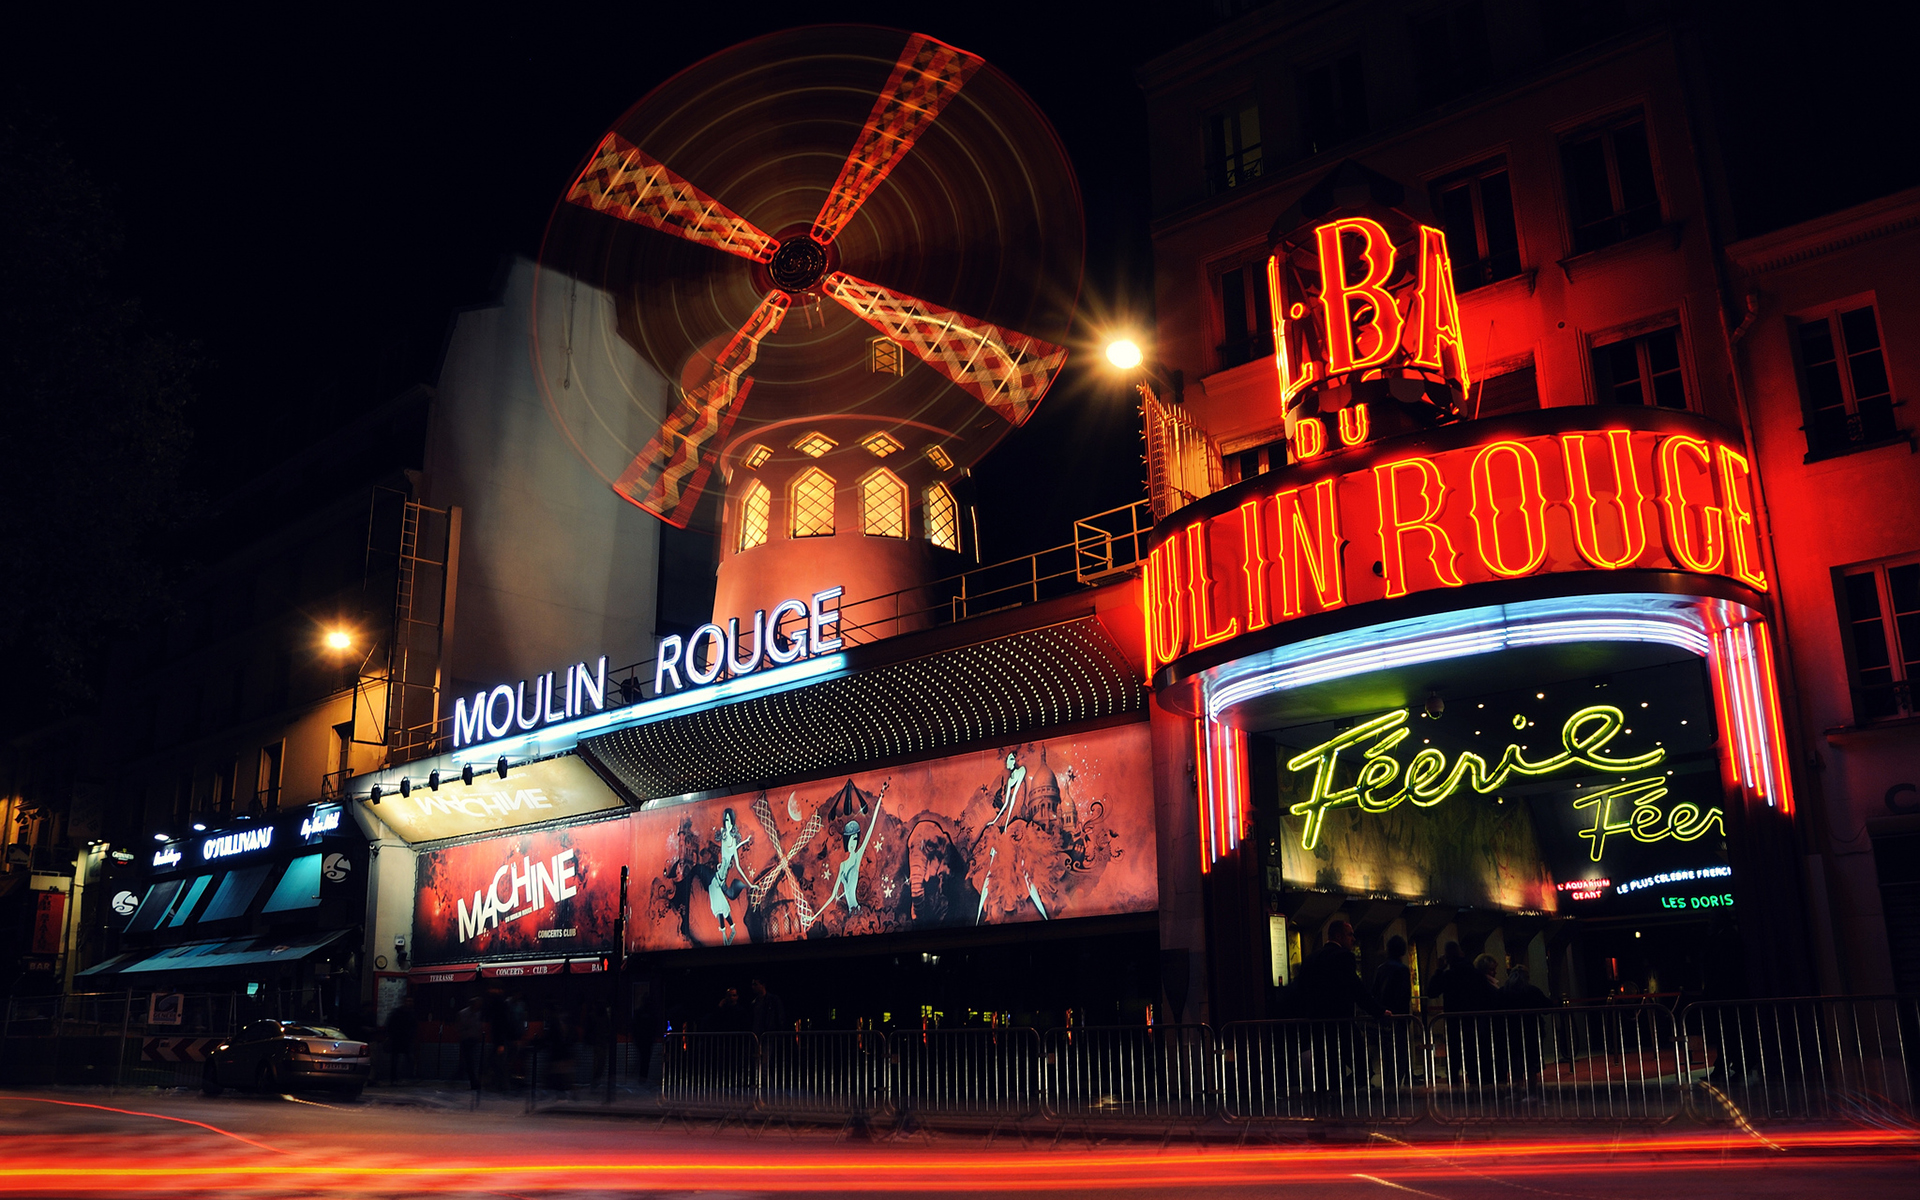 Descargar fondos de escritorio de Moulin Rouge HD